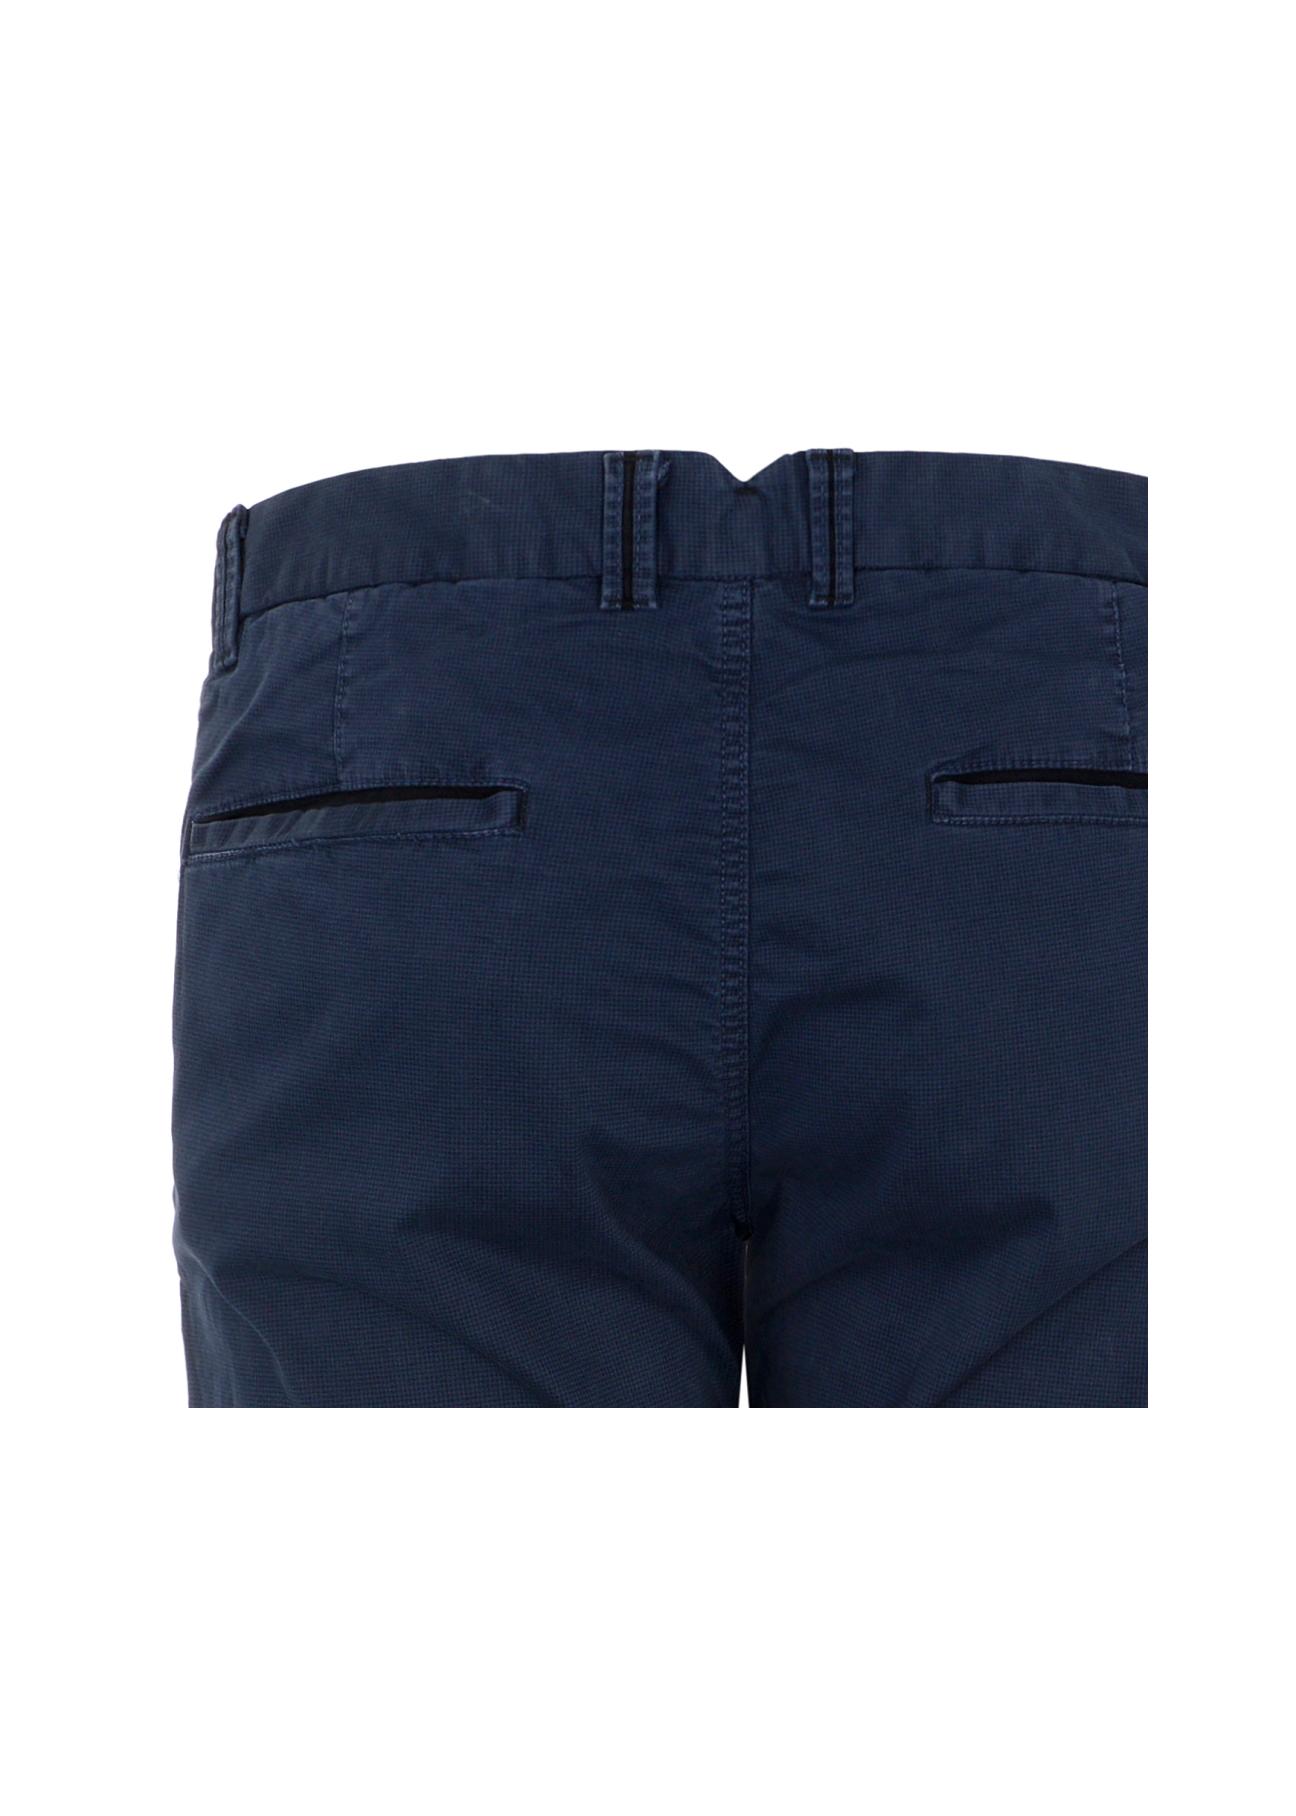 Spodnie męskie SPOMT-0063-69(W21)